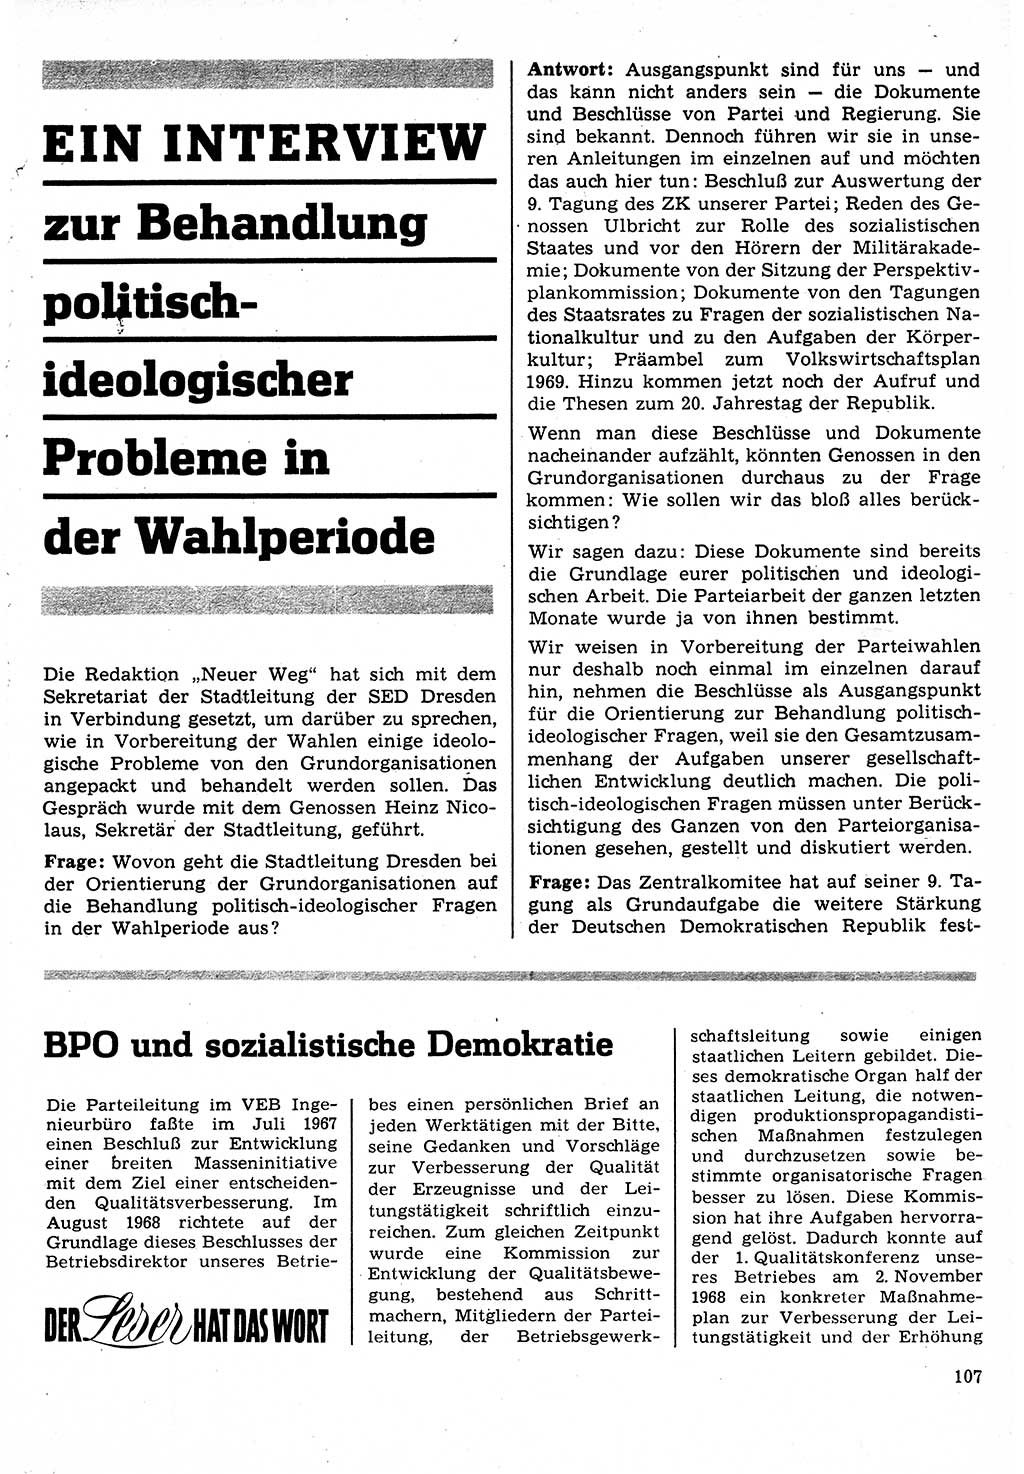 Neuer Weg (NW), Organ des Zentralkomitees (ZK) der SED (Sozialistische Einheitspartei Deutschlands) für Fragen des Parteilebens, 24. Jahrgang [Deutsche Demokratische Republik (DDR)] 1969, Seite 107 (NW ZK SED DDR 1969, S. 107)